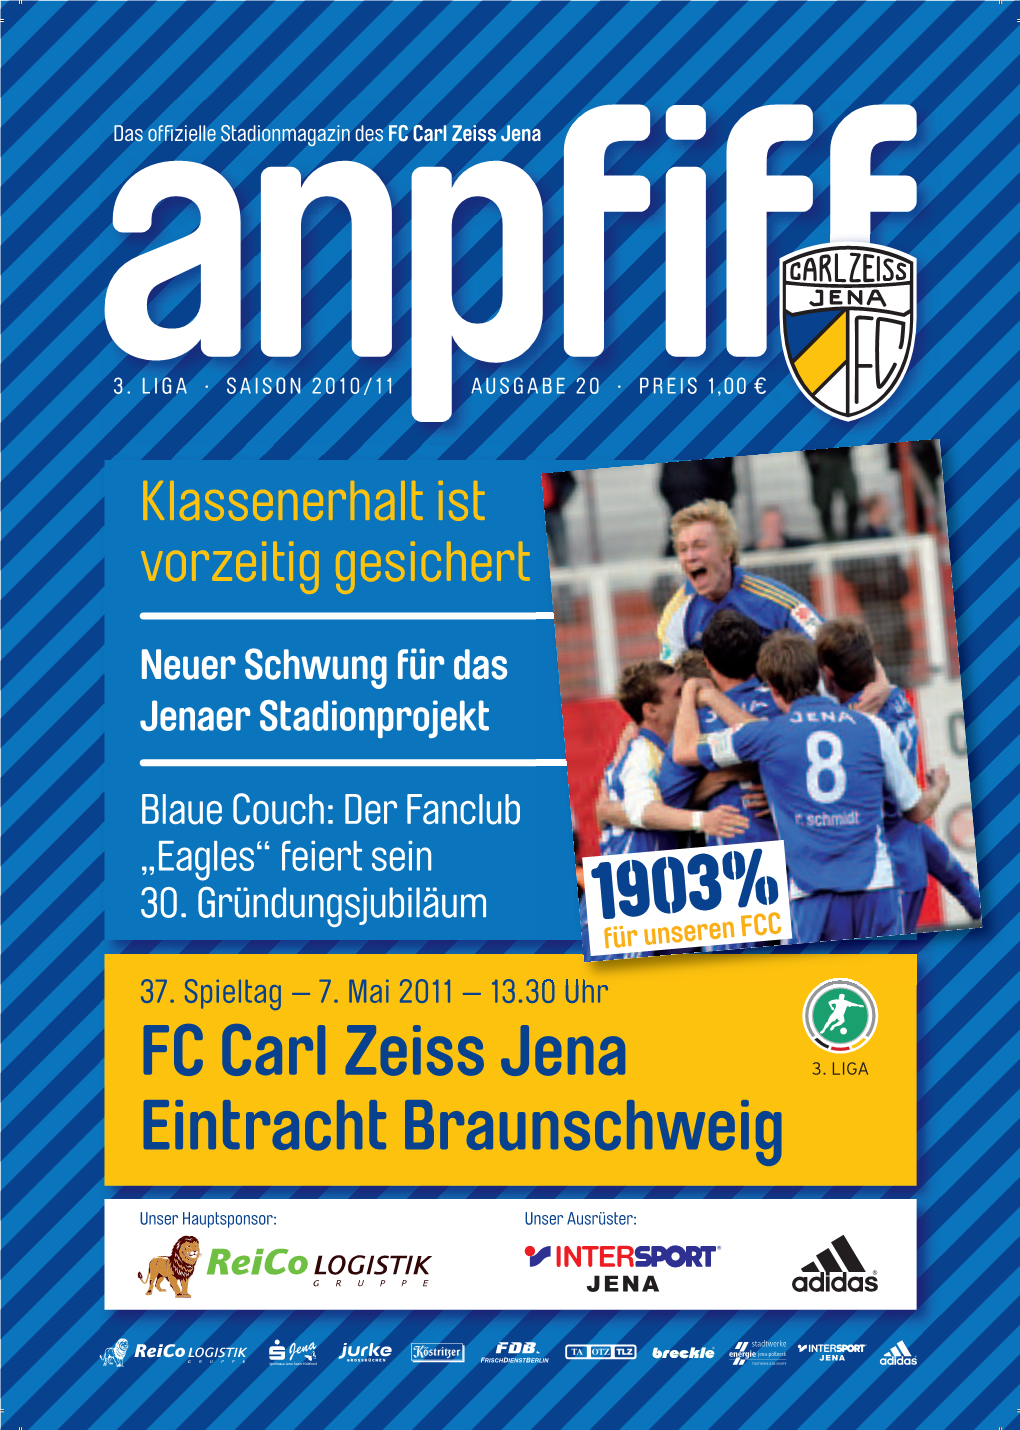 FC Carl Zeiss Jena Eintracht Braunschweig